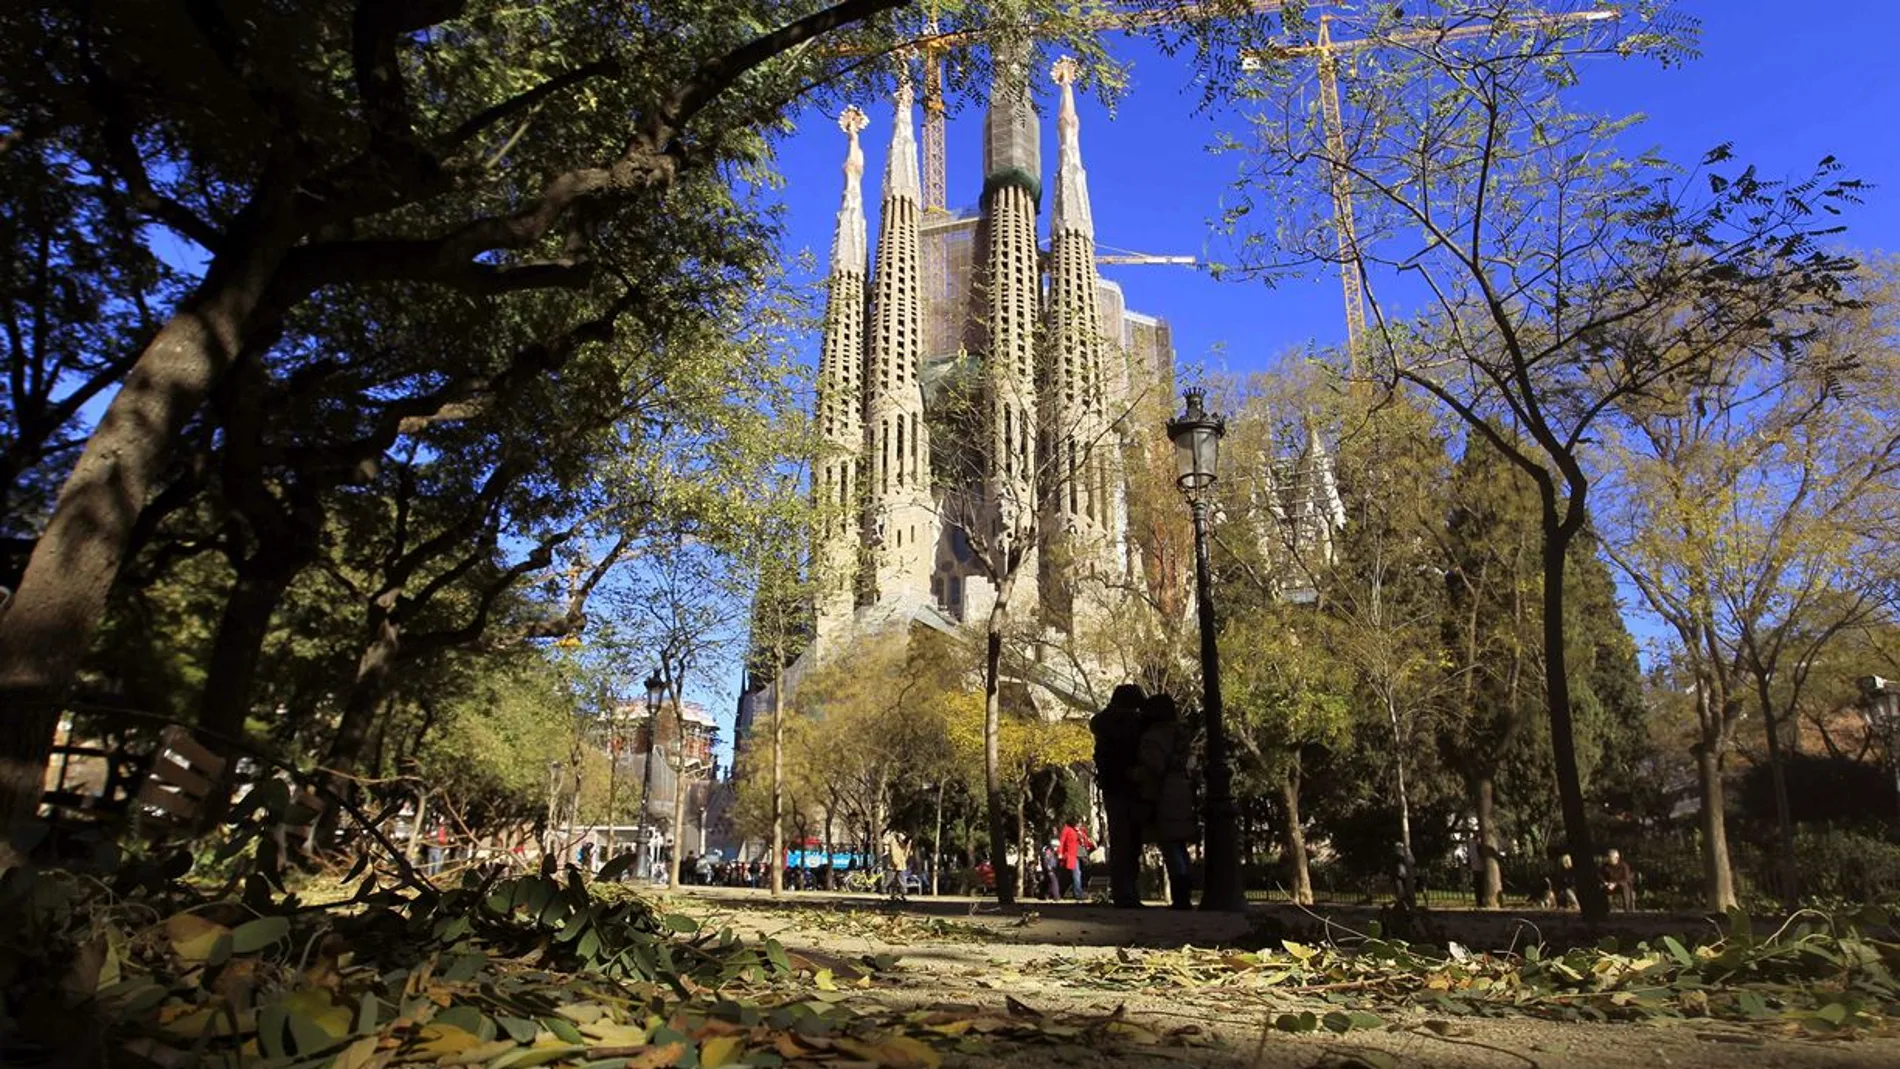 Imagen de la Sagrada Familia